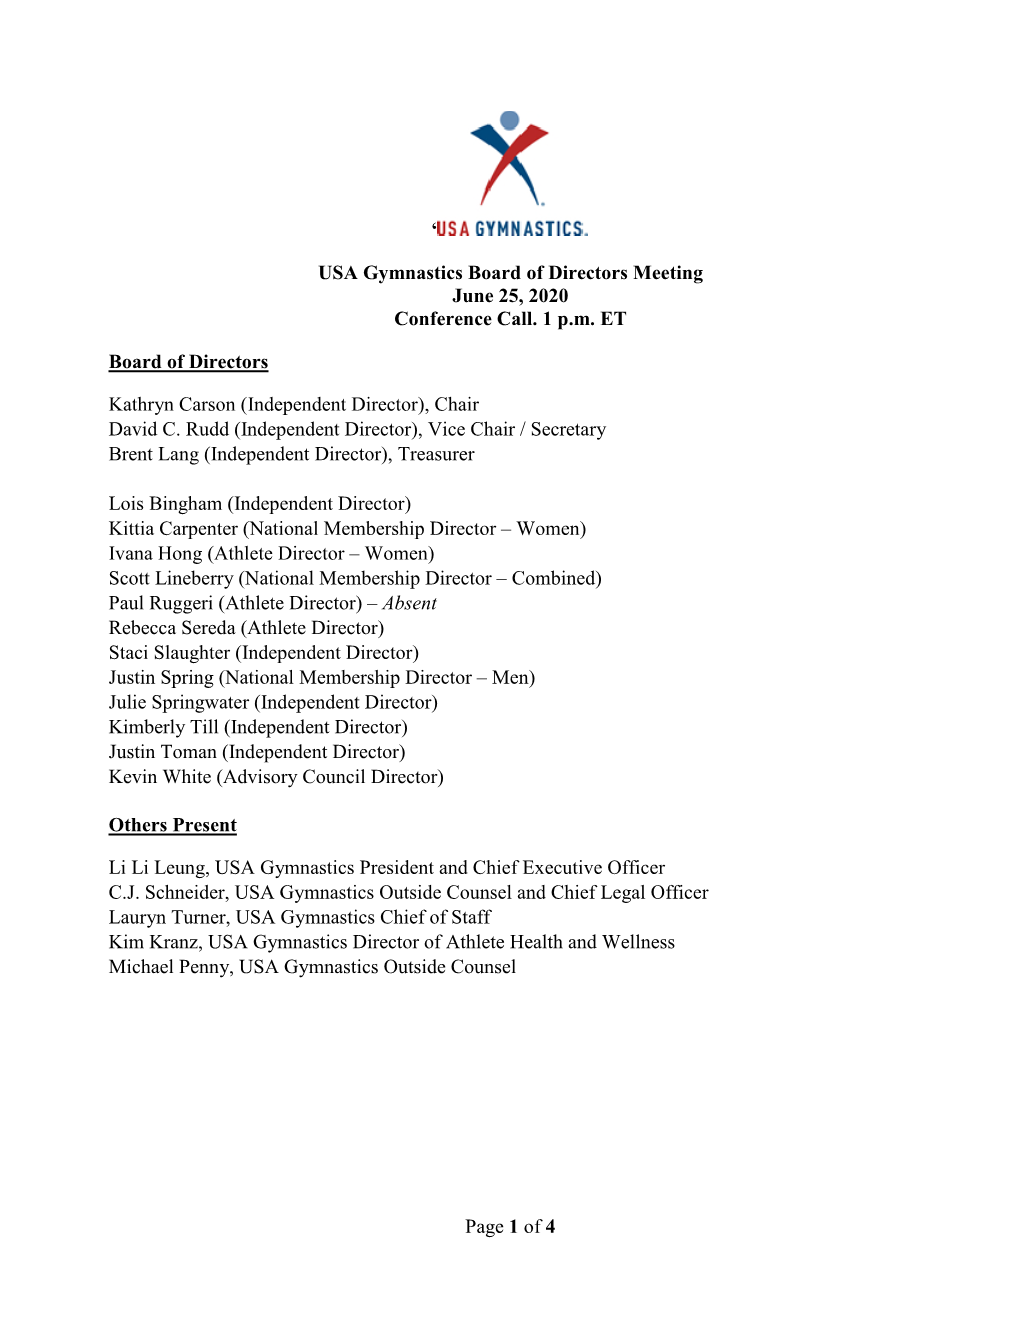 USA Gymnastics Board of Directors Regular Meeting Minutes